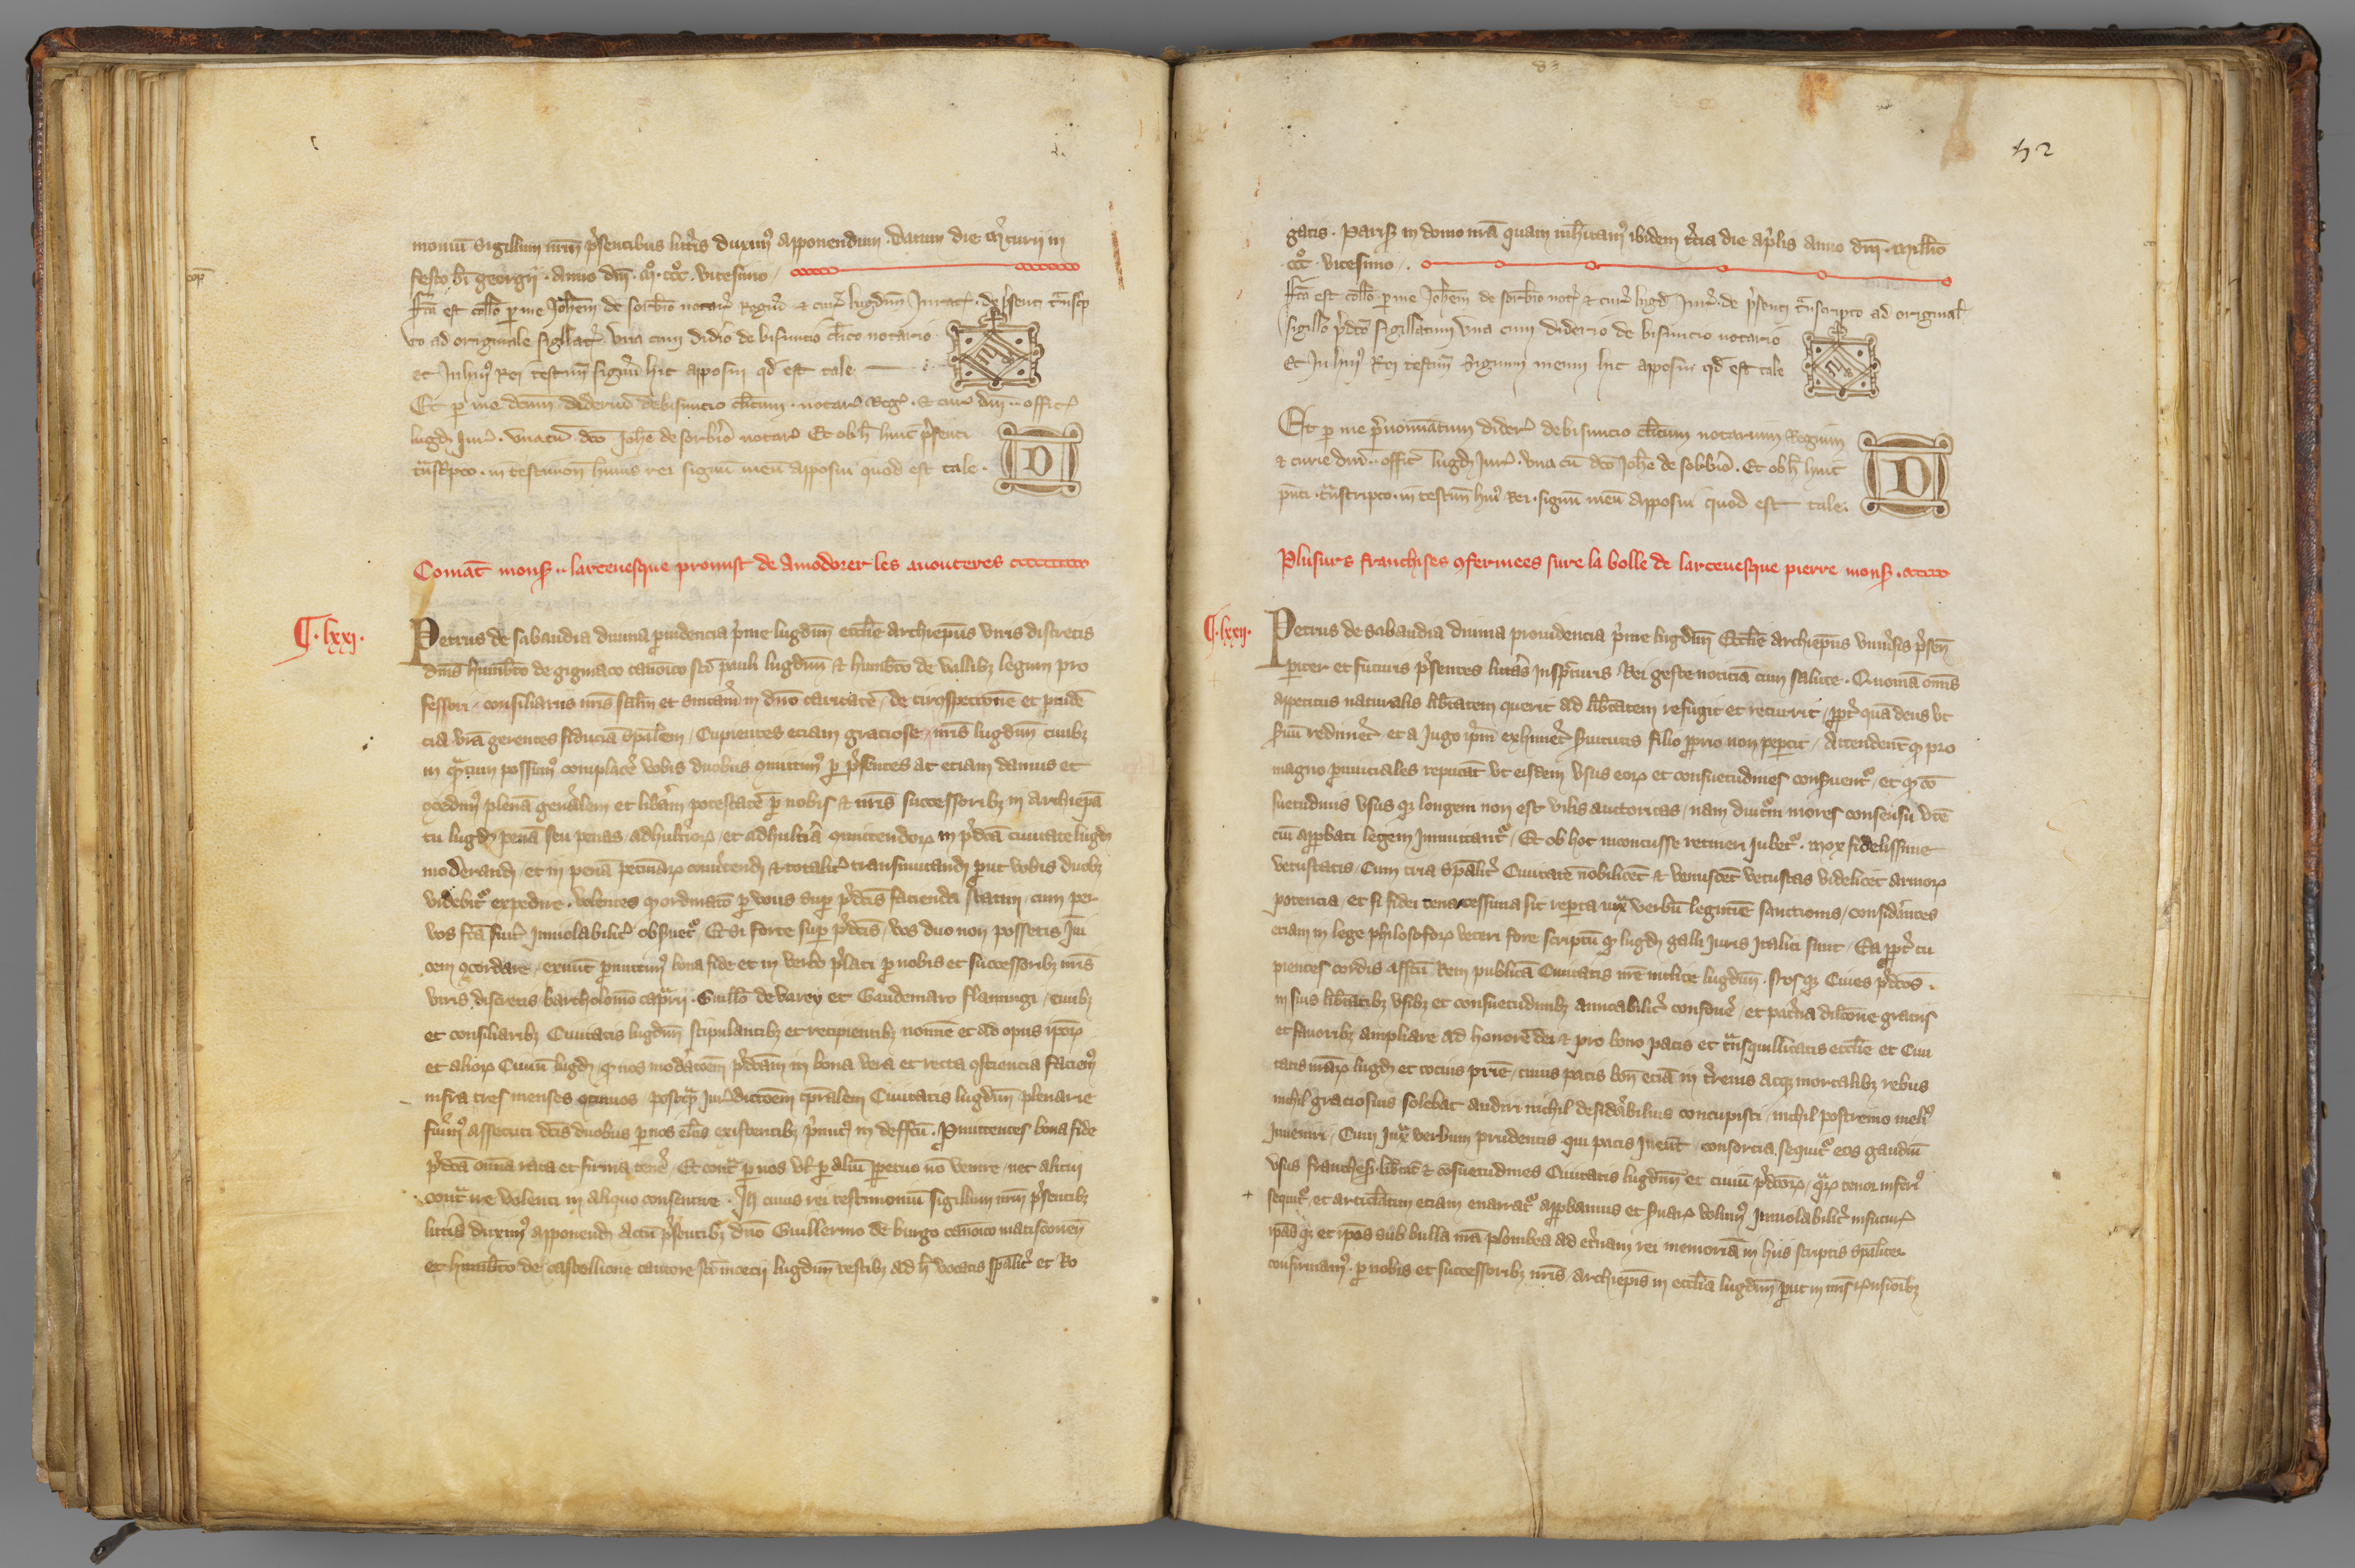 Copie authentique de la charte sapaudine du 21 juin 1320, extr. du cartulaire d'Etienne de Villeneuve (1336, AA/1, folio 51v-52r)